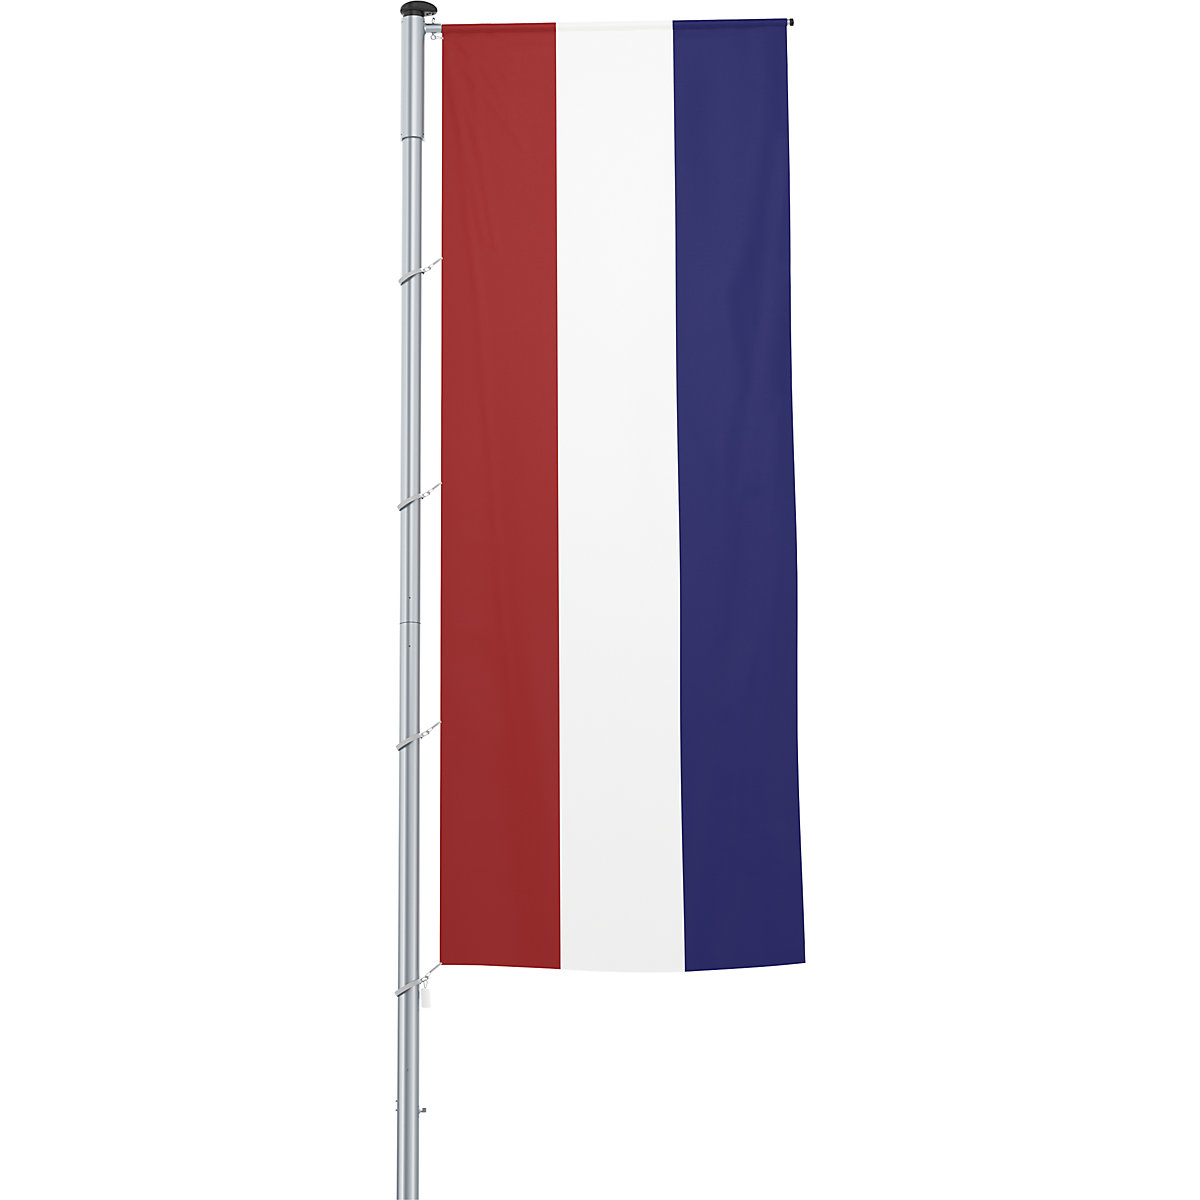 Vlajka na pozdĺžne upevnenie na stožiar/národná vlajka – Mannus, formát 1,2 x 3 m, Holandsko-20